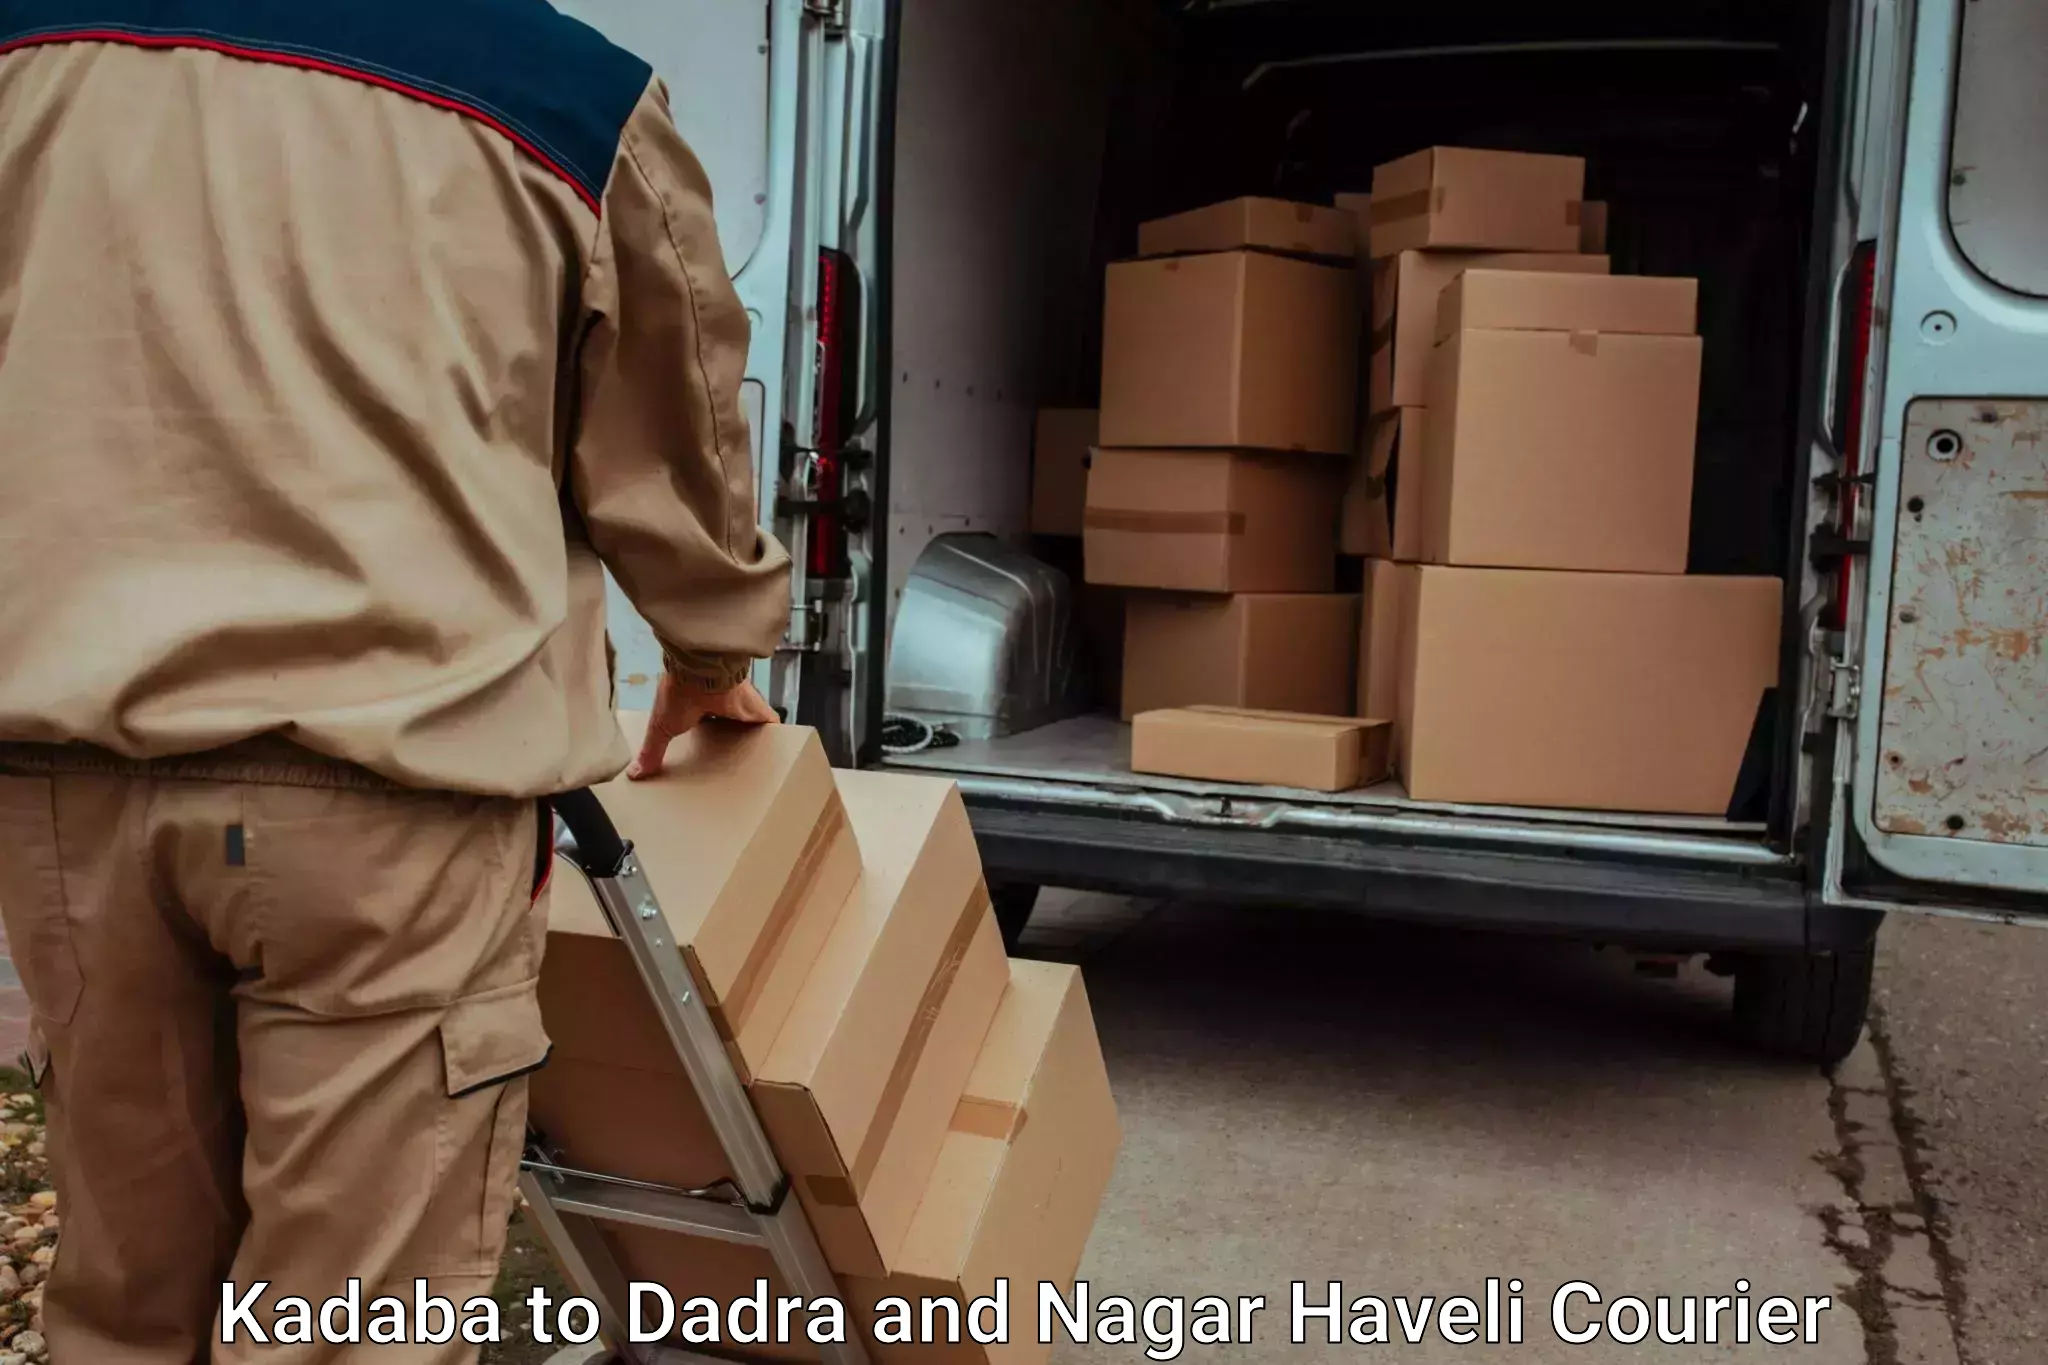 Dependable moving services Kadaba to Dadra and Nagar Haveli